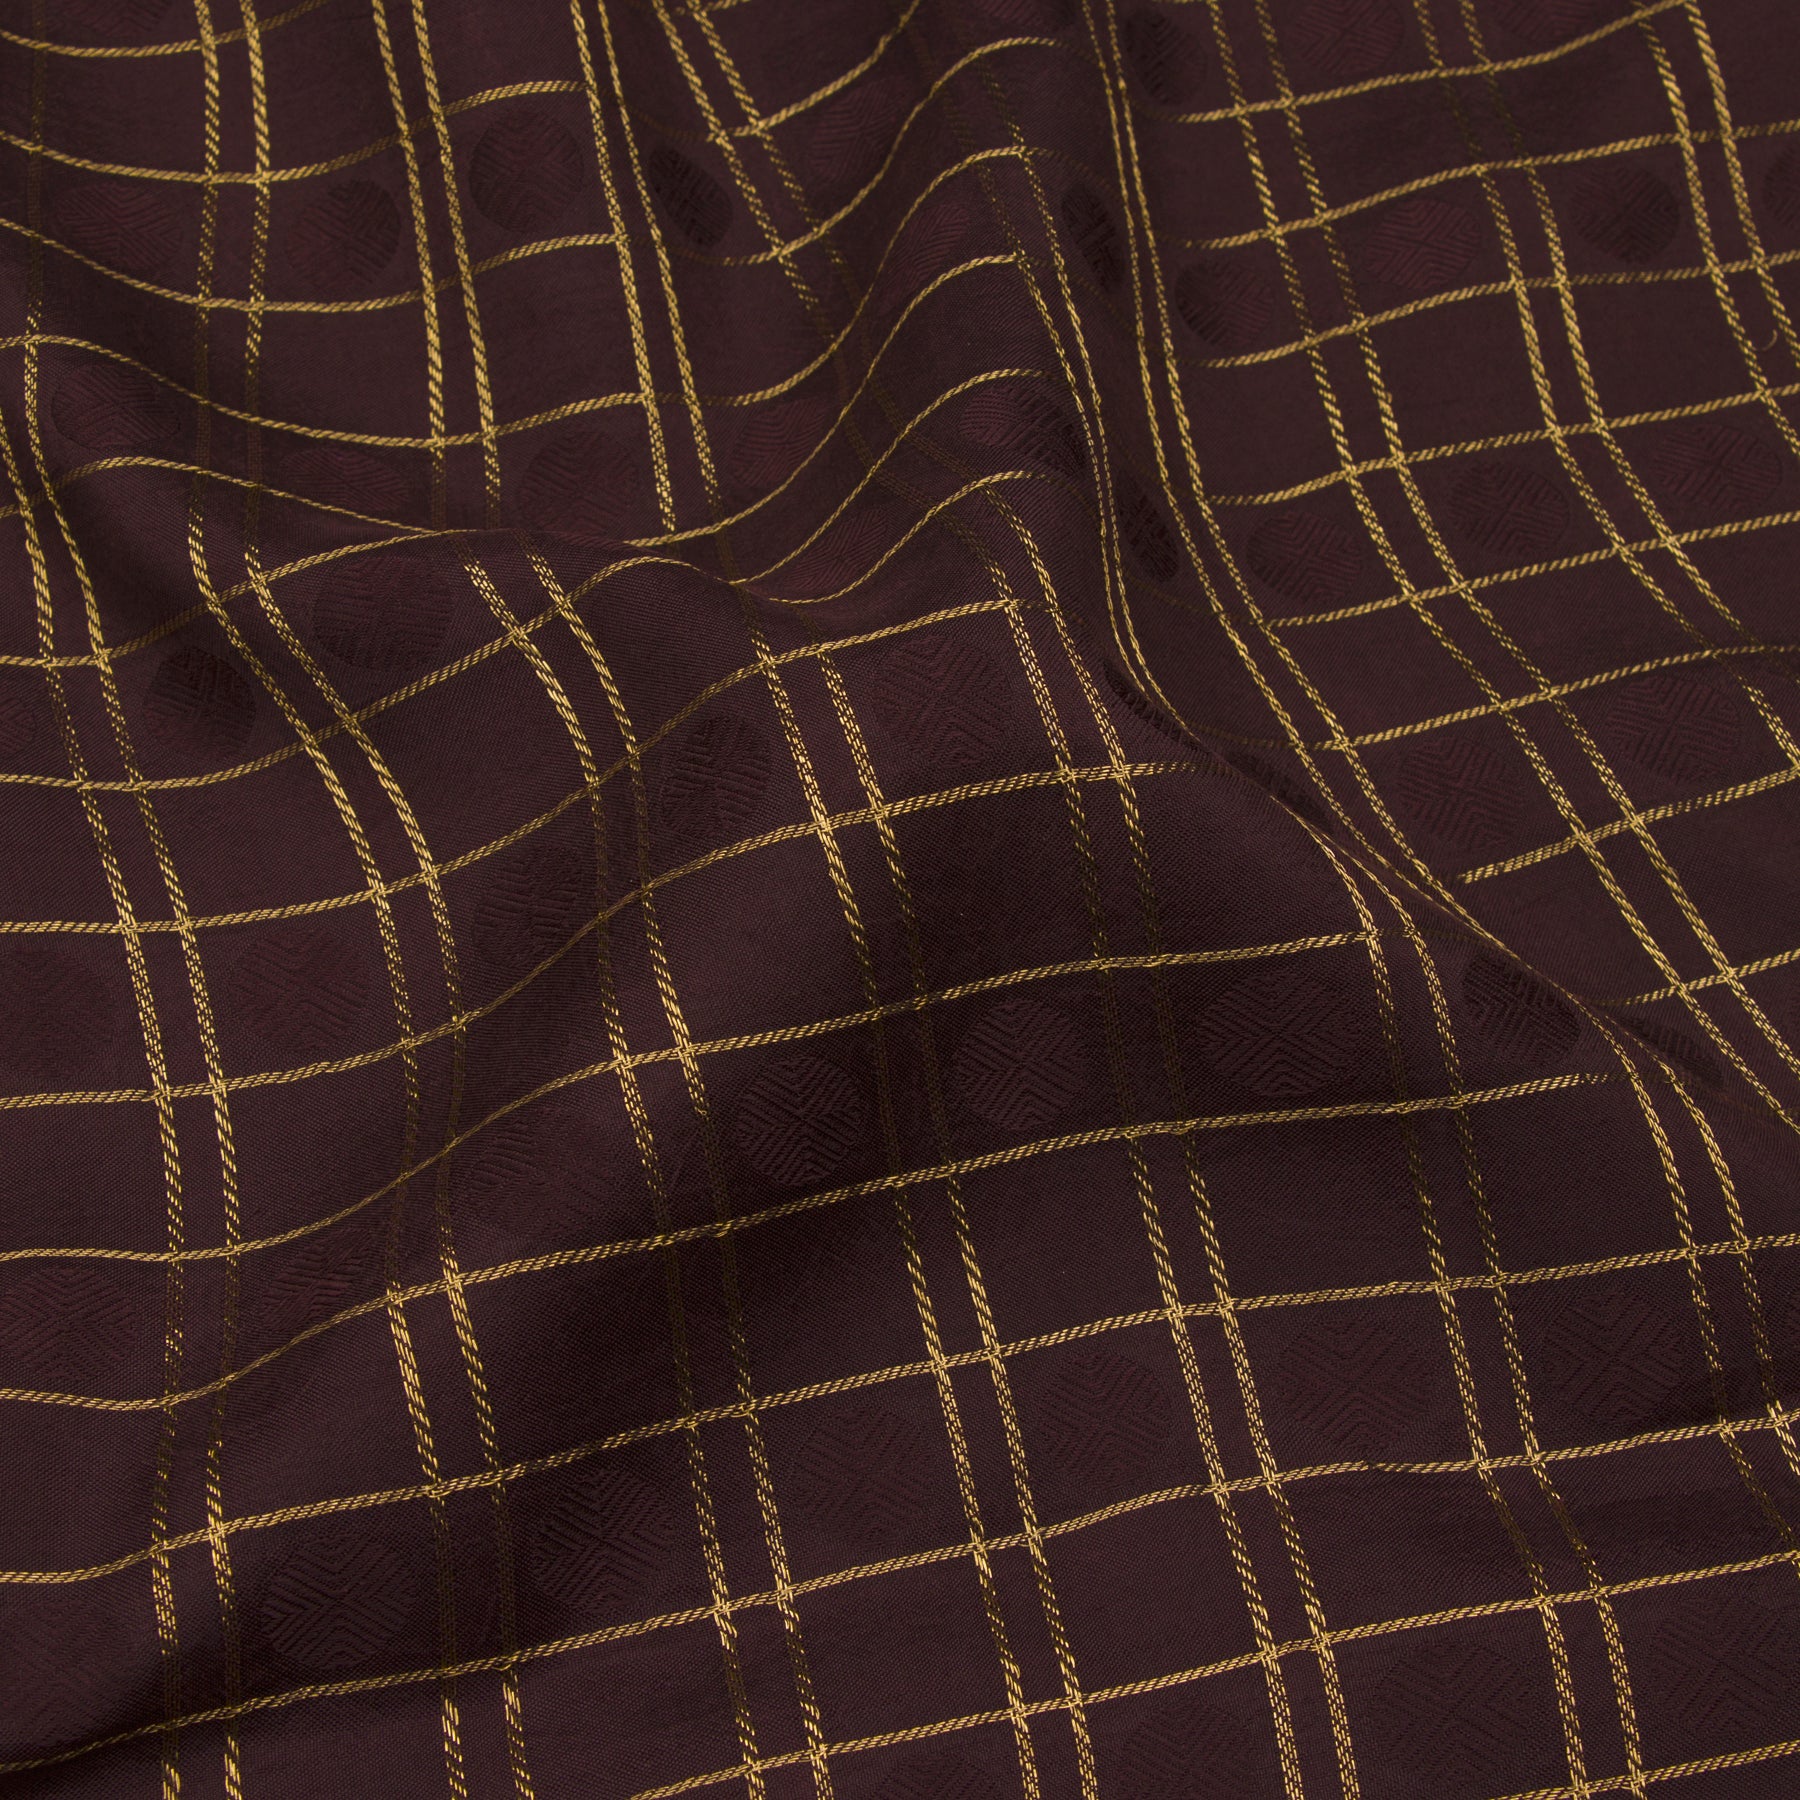 Kanakavalli Kanjivaram Silk Sari 22-100-HS001-00672 - Fabric View